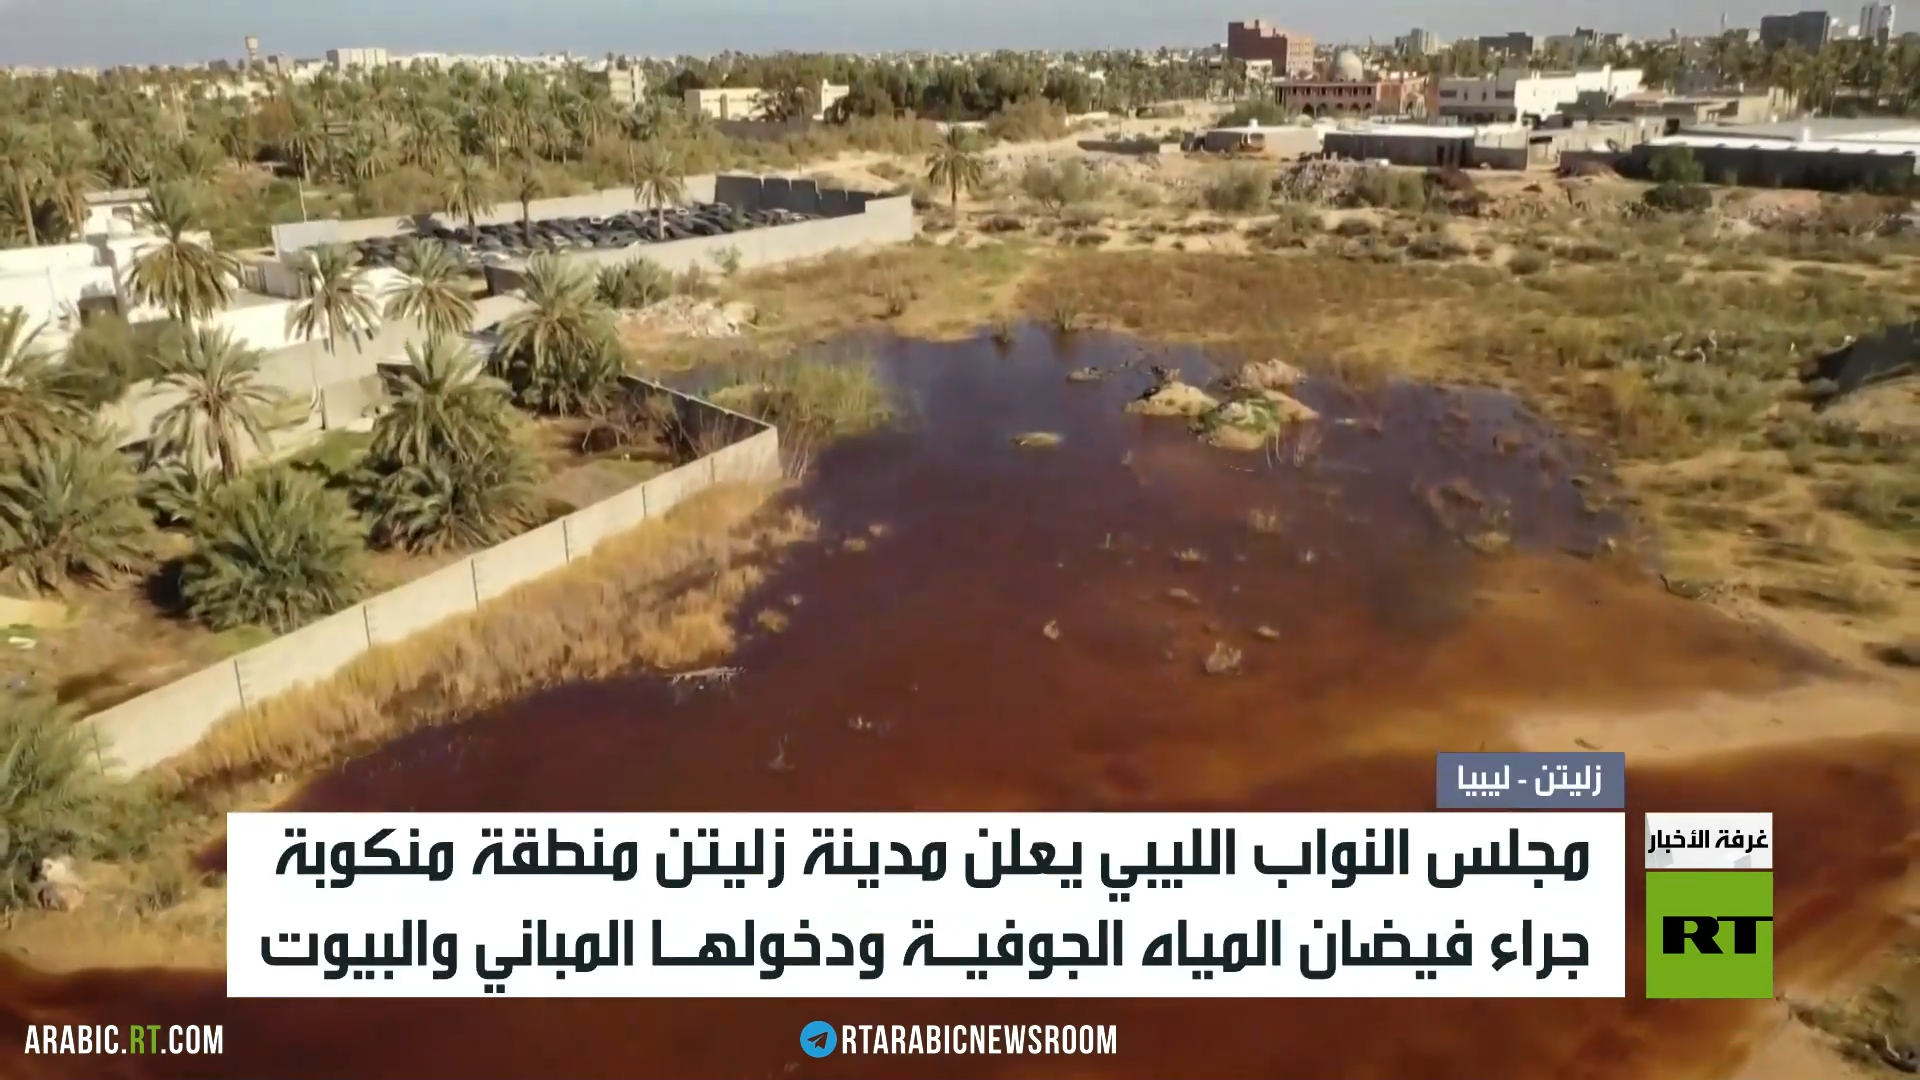 النواب الليبي يعلن زليتن مدينة منكوبة